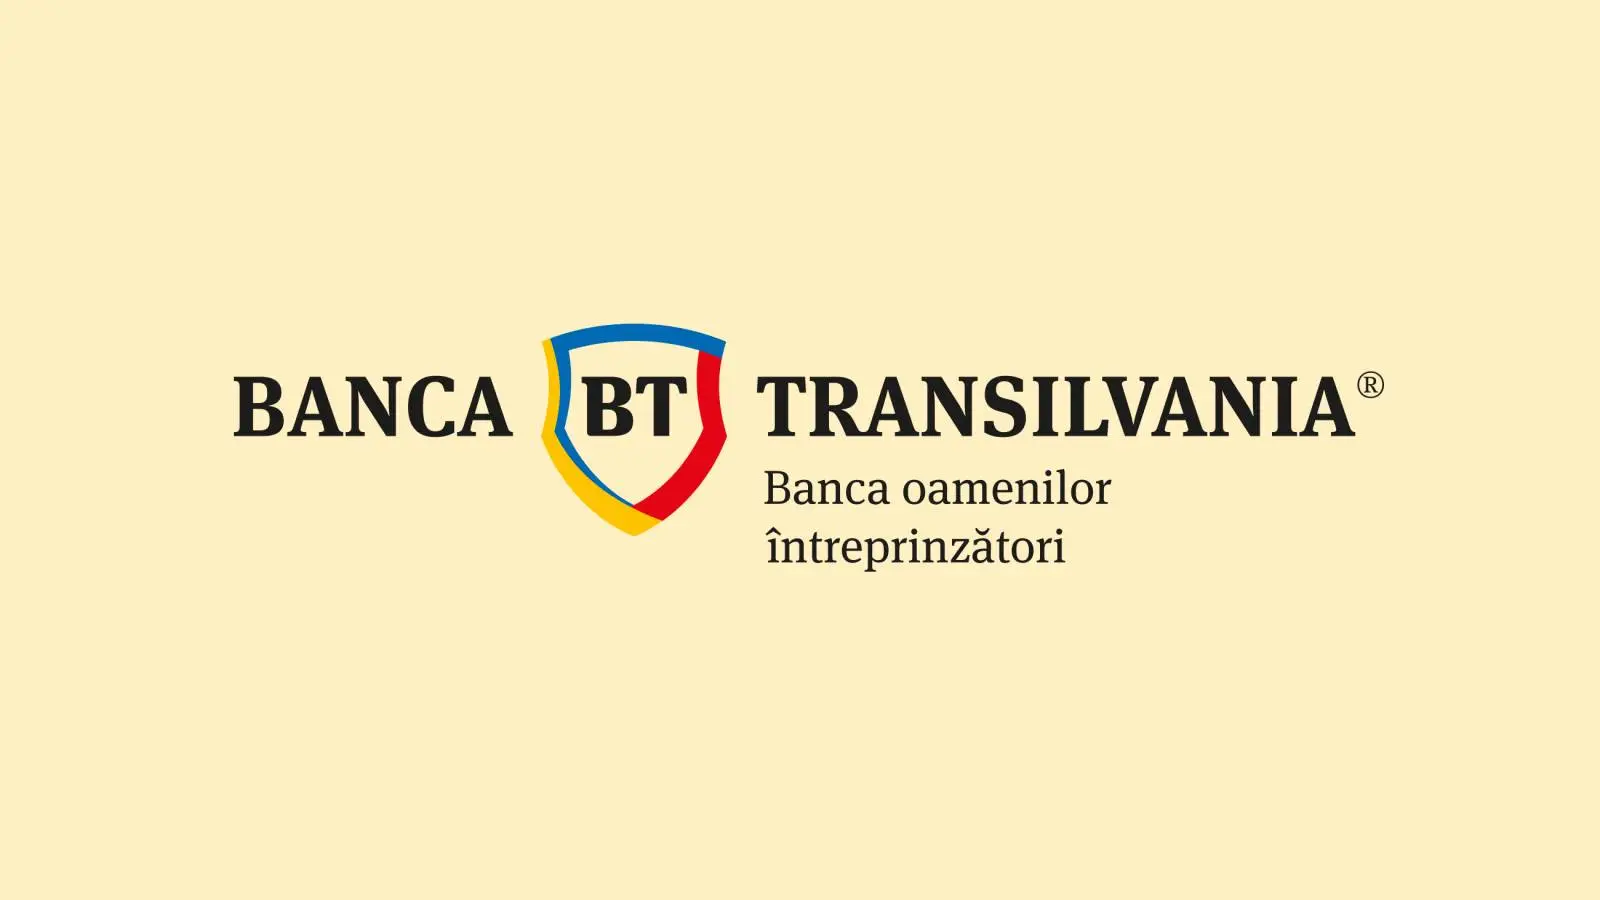 Wichtige Ankündigung von BANCA Transilvania KOSTENLOS für rumänische Kunden